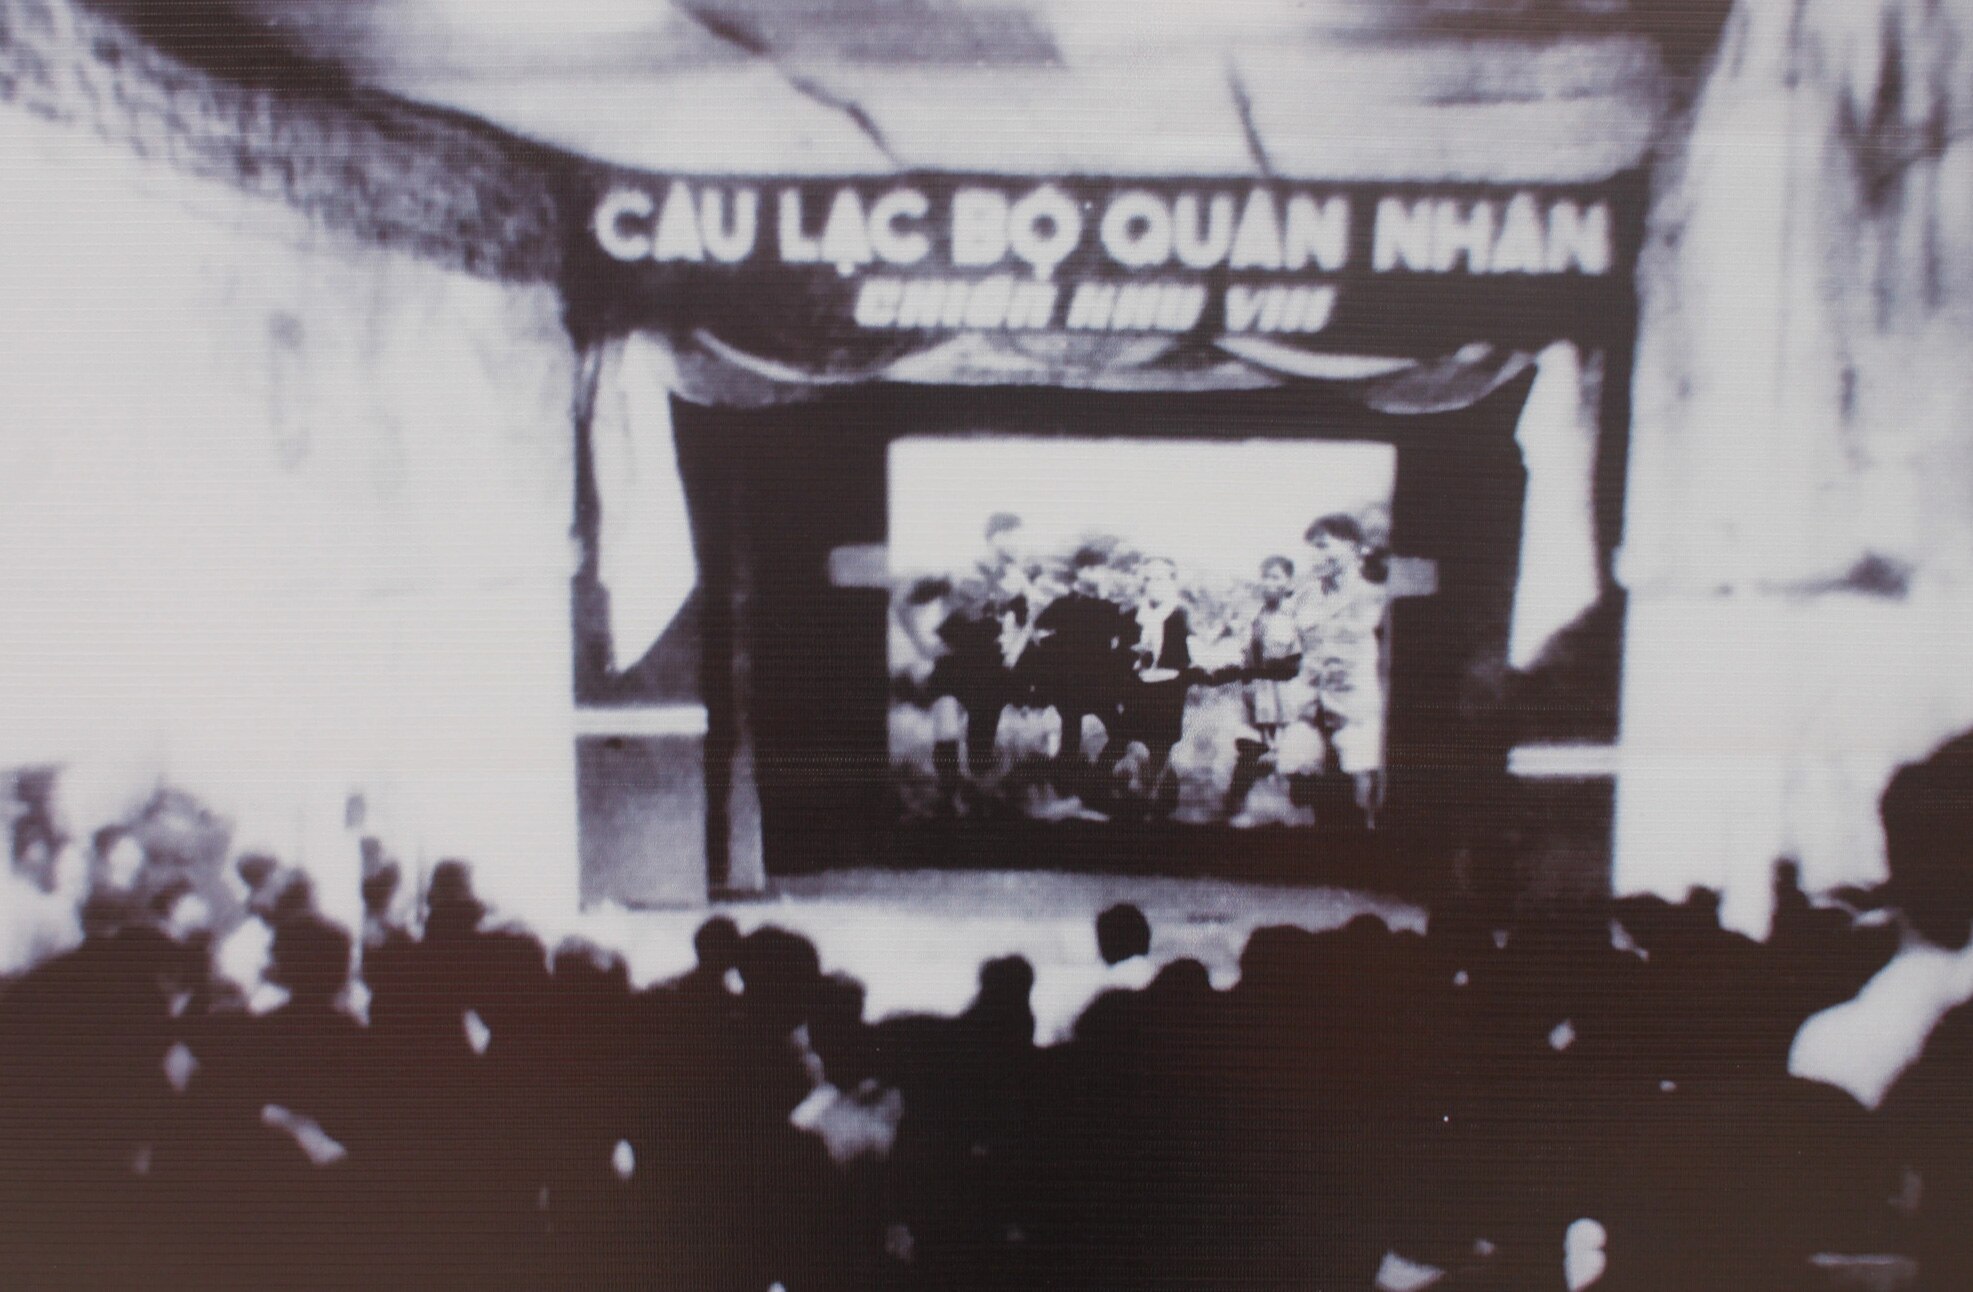 Đêm 24-12-1948, buổi chiếu phim tài liệu đầu tiên trong lịch sử điện ảnh Nam Bộ diễn ra tại Câu lạc bộ quân nhân trên bờ kênh Dương Văn Dương, xã Nhân Hòa Lập, huyện Mộc Hóa, tỉnh Long An. Trên màn ảnh là phim Trận Mộc Hóa